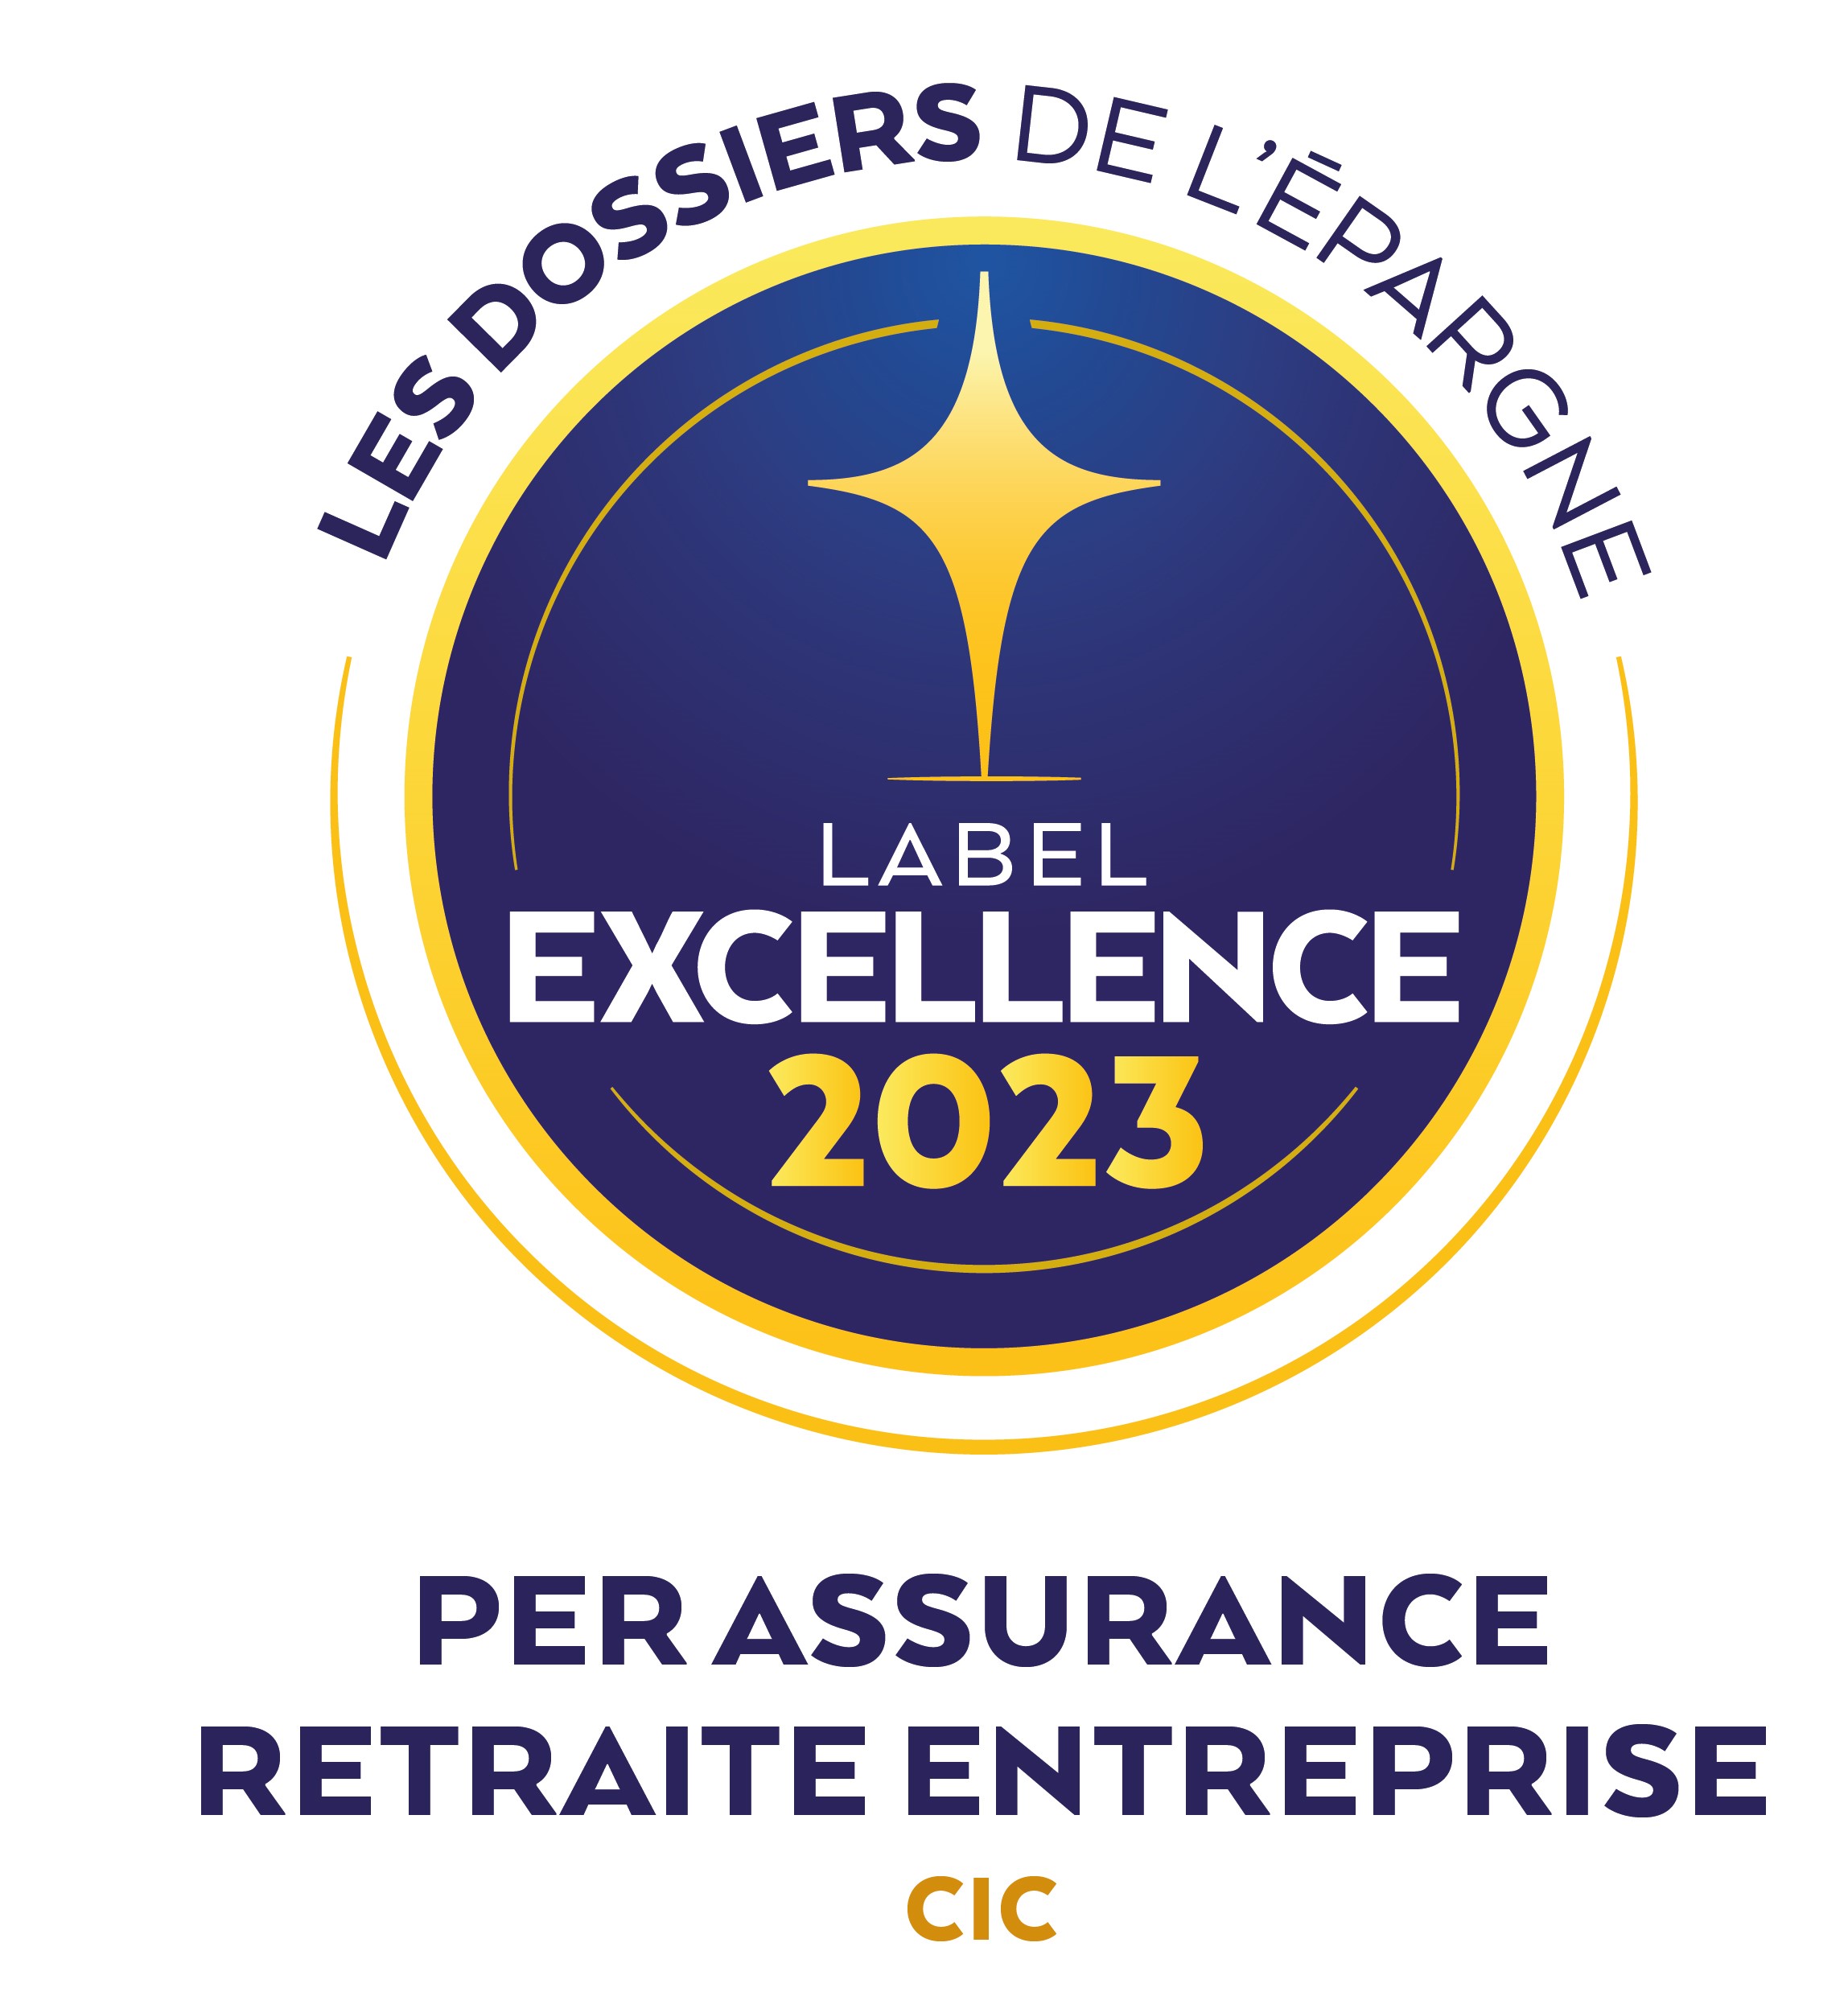 Label Excellence 2023 PER Assurance Retraite Entreprise